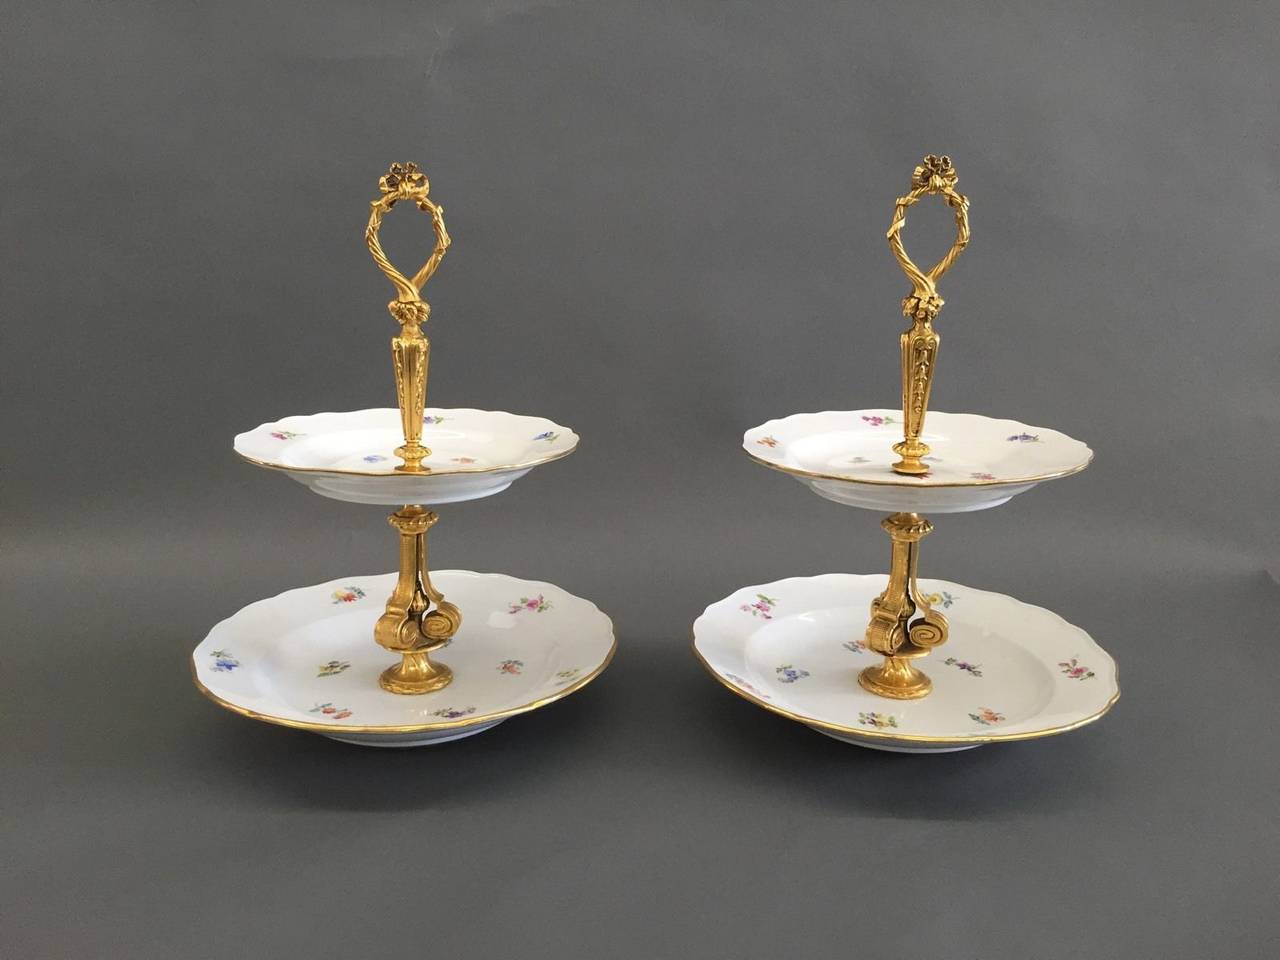 Ein Paar zweistöckige Dessertteller aus Meissener Porzellan des 19. Jahrhunderts mit vergoldeter Bronze

Abmessungen: Höhe: 13